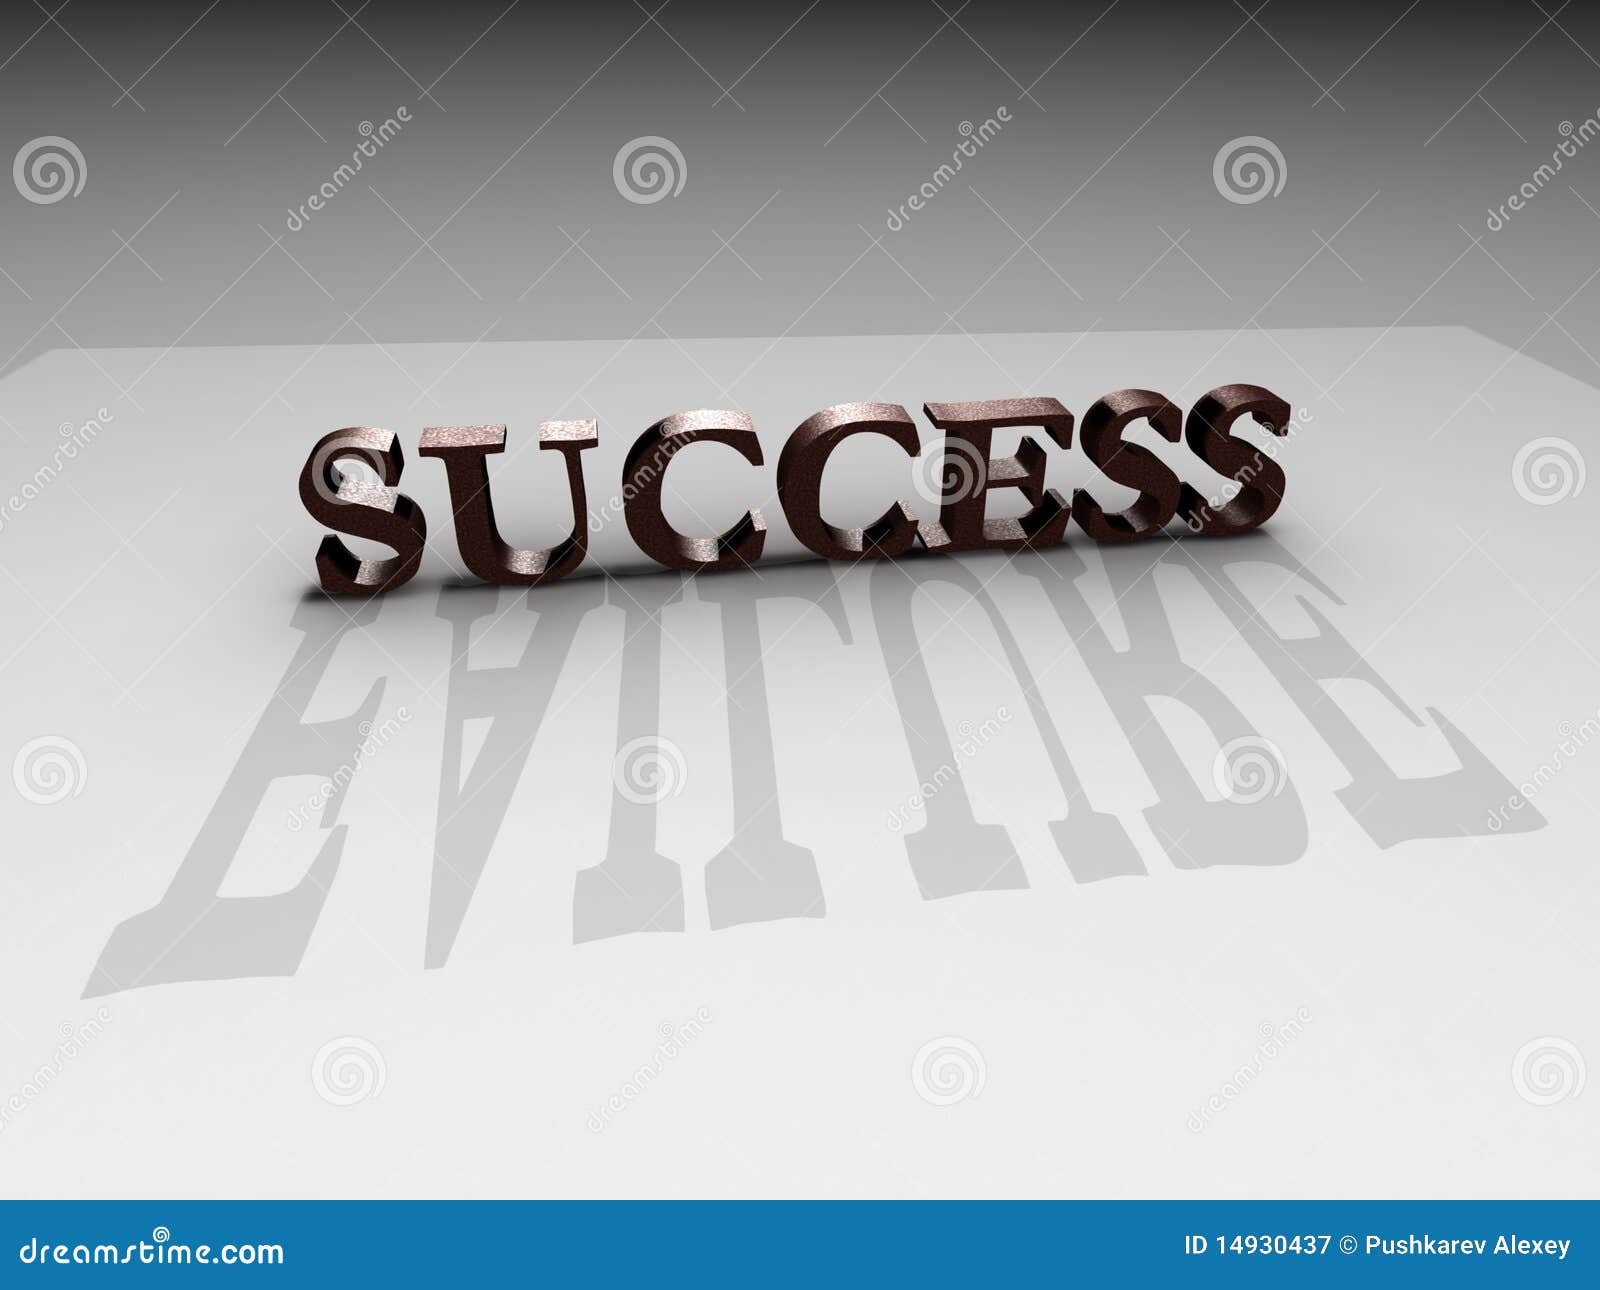 success-failure-14930437.jpg